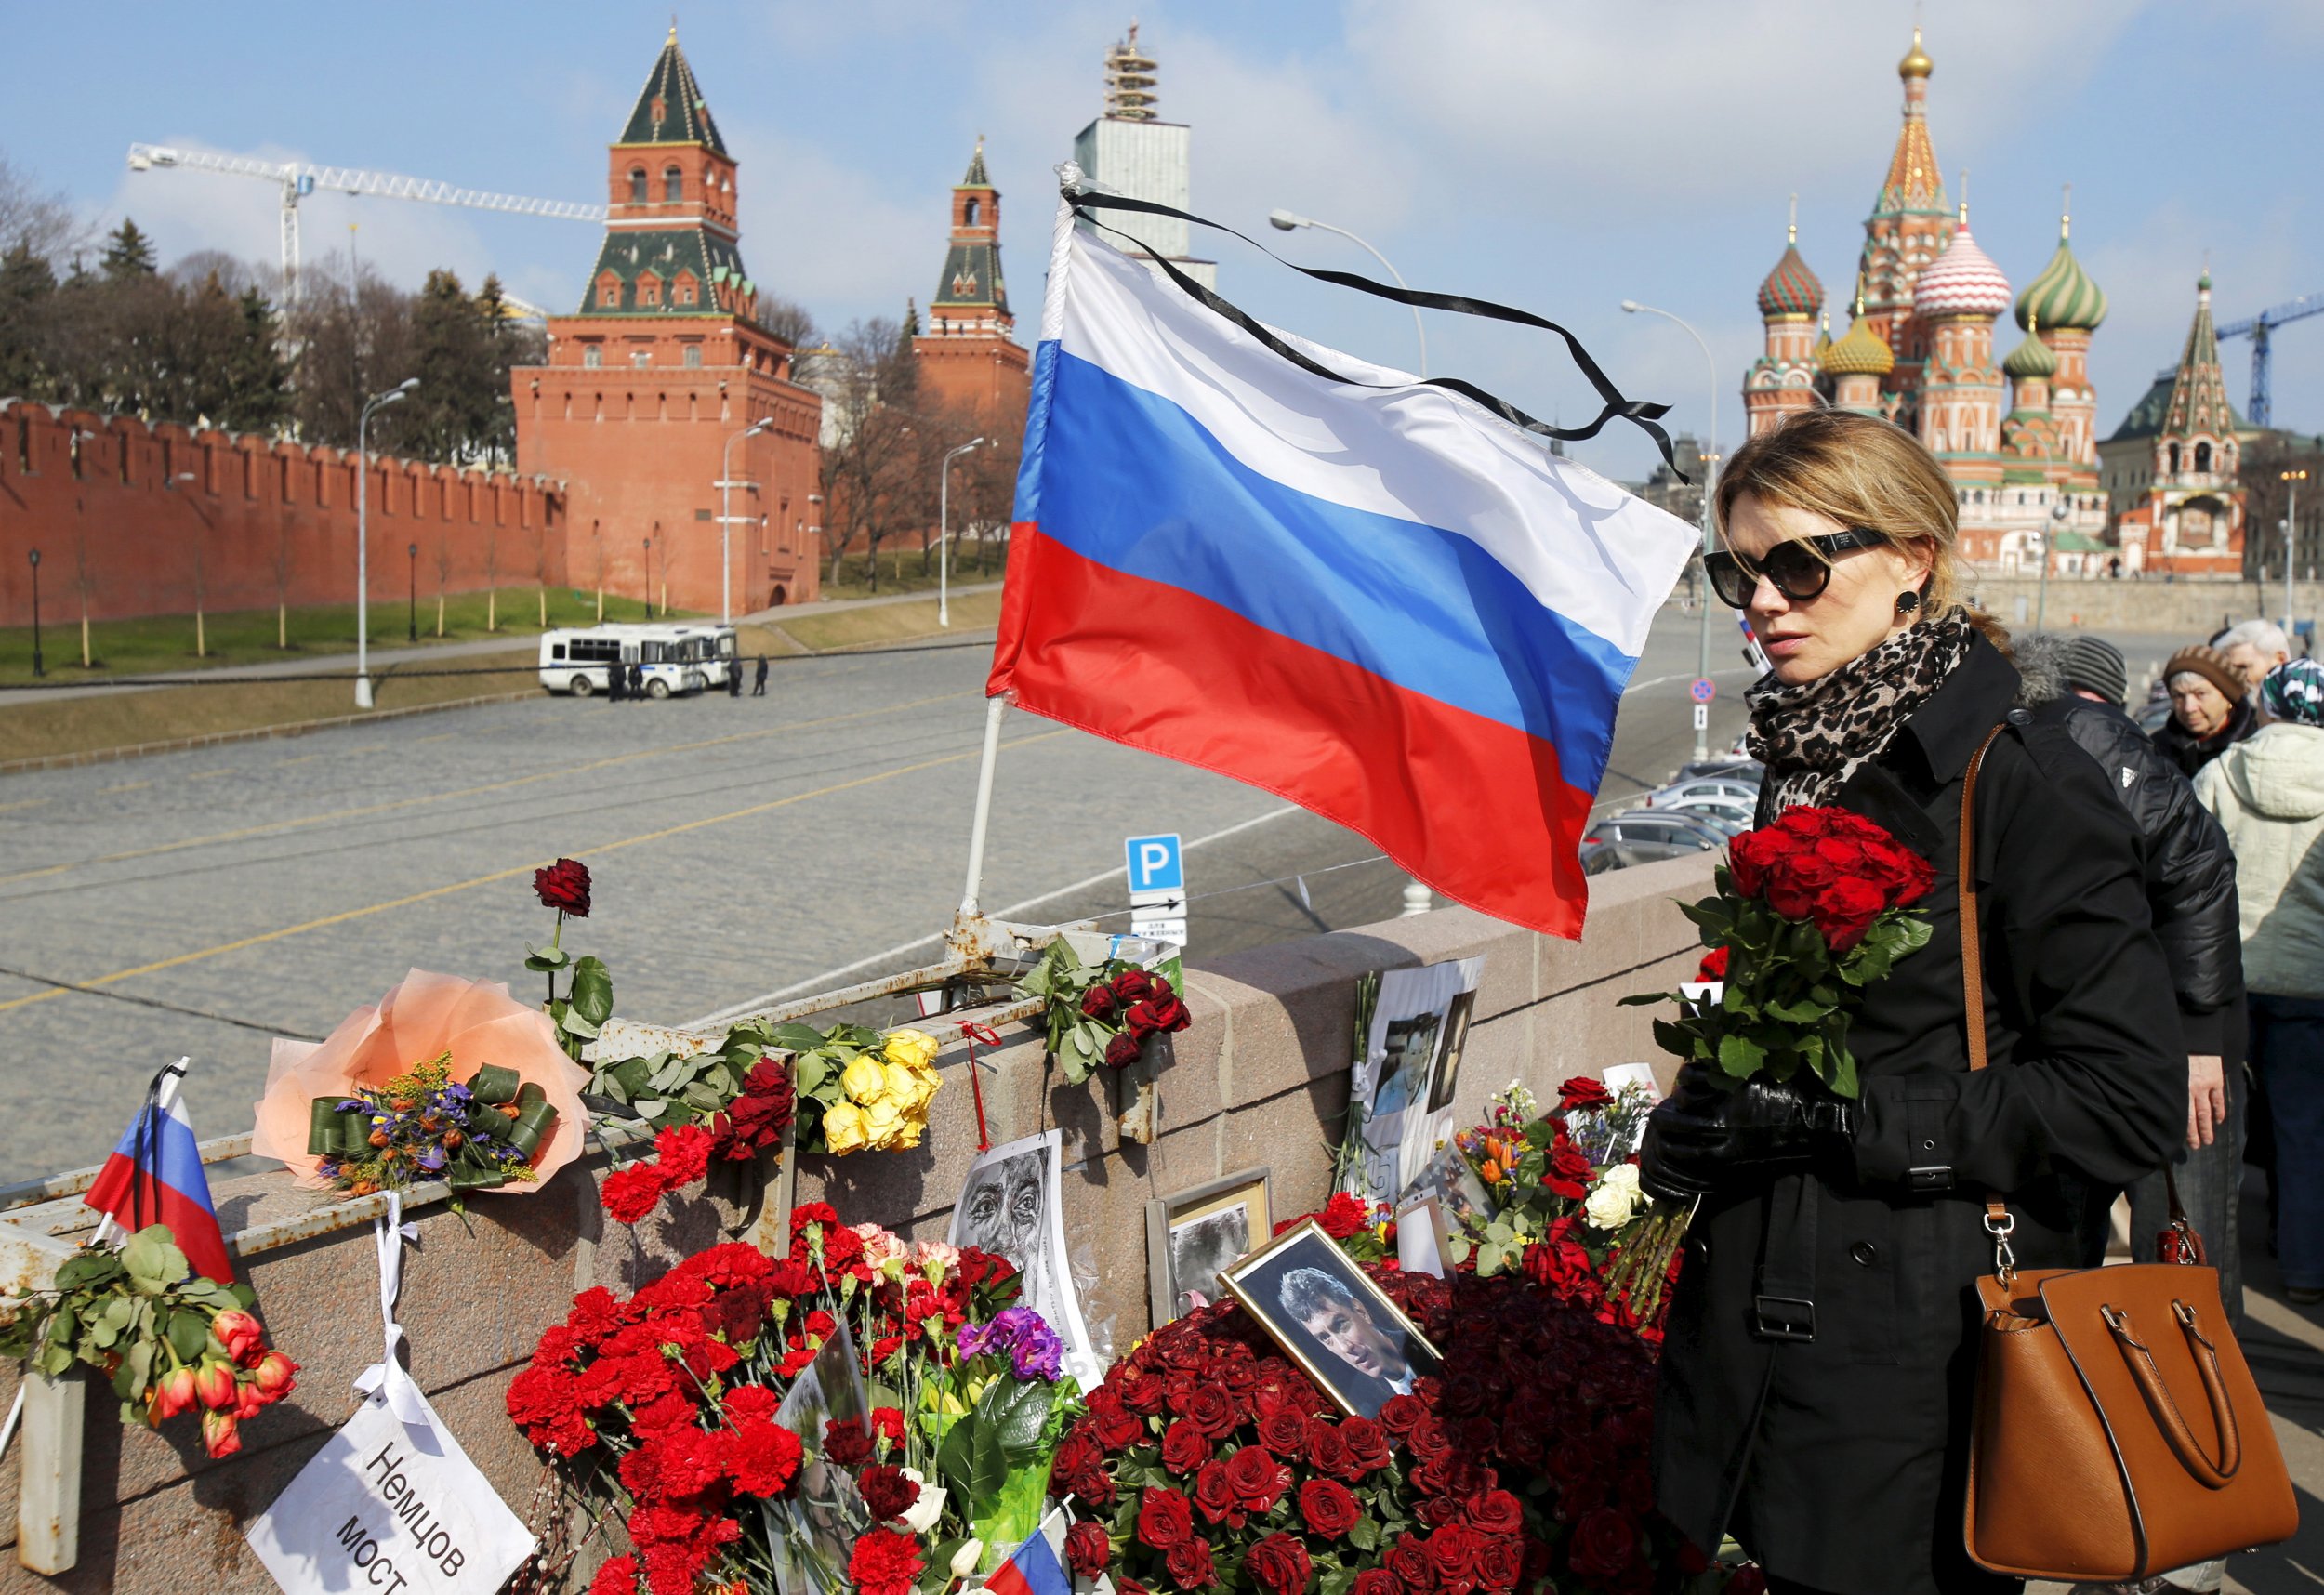 Boris Nemtsov's unofficial memorial in Moscow